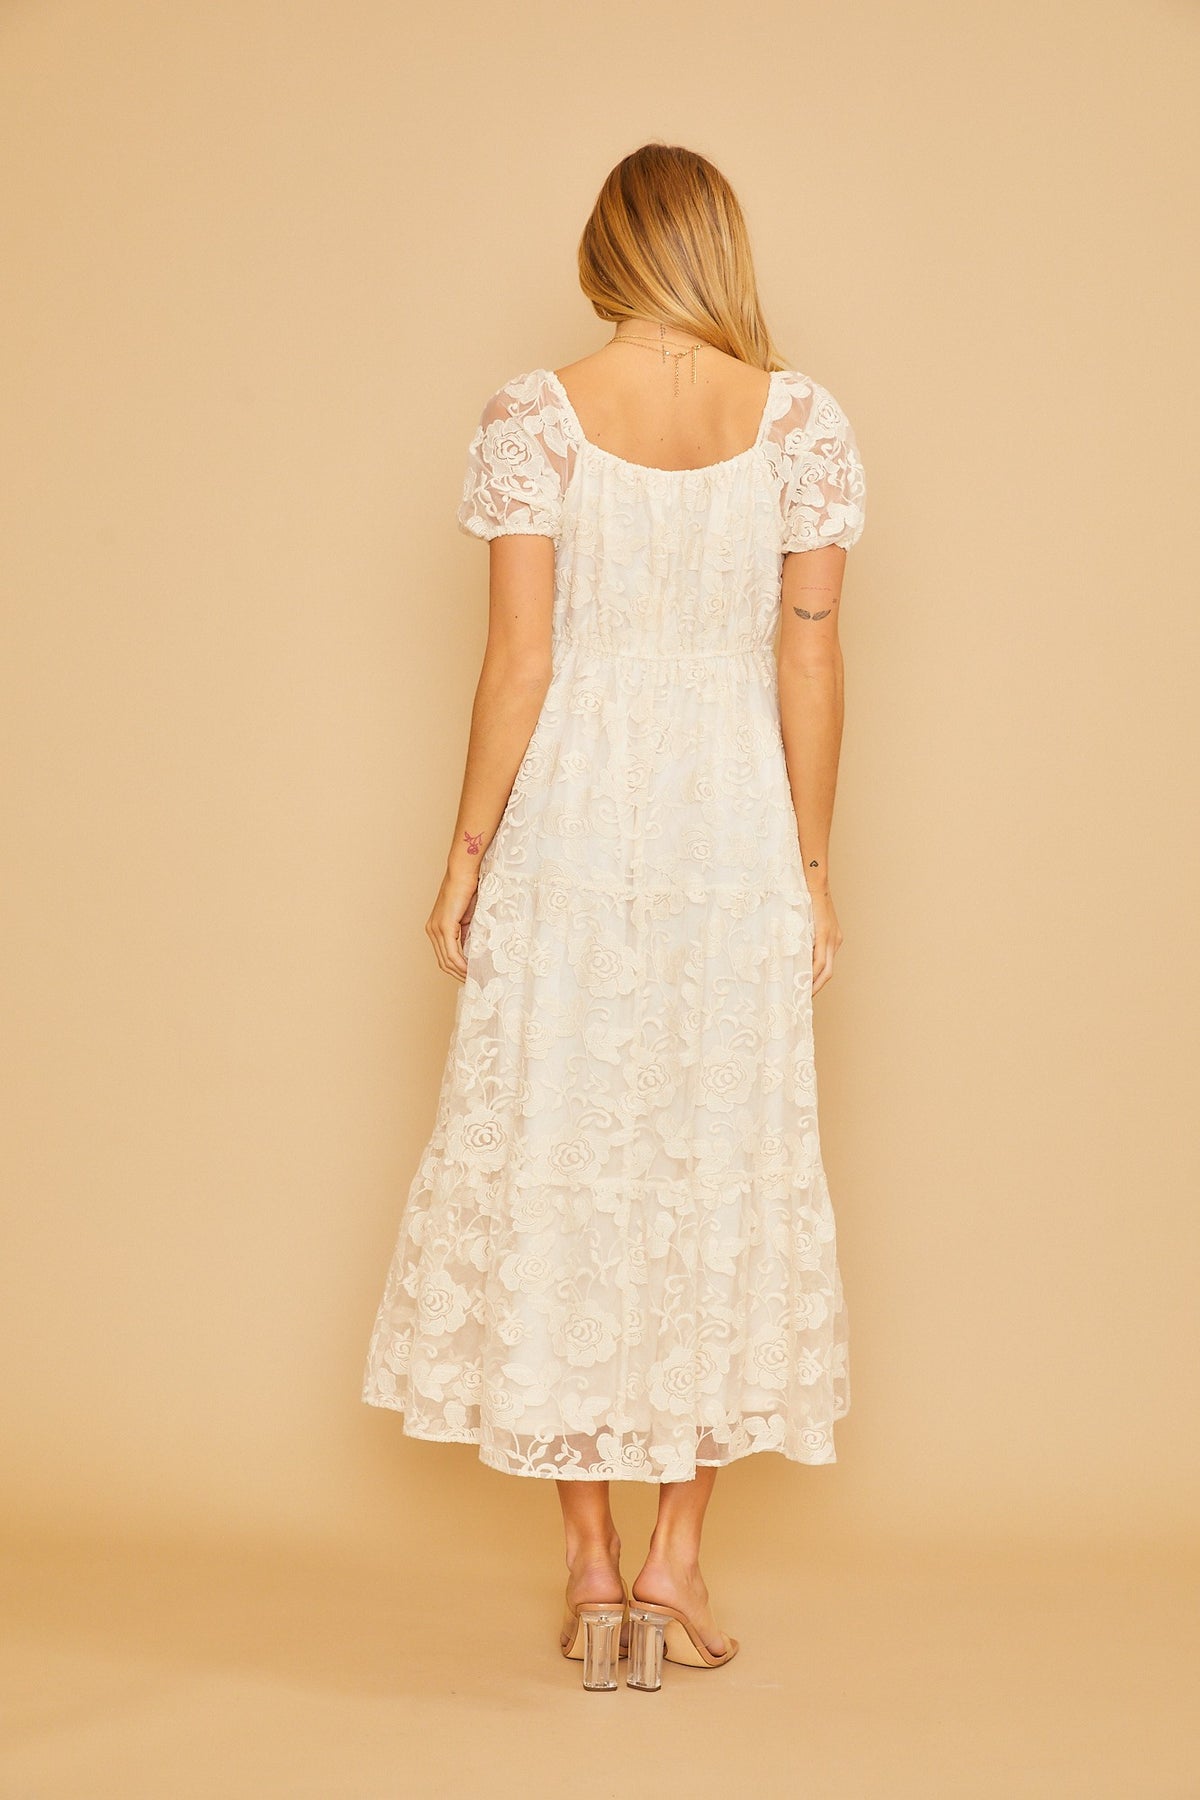 Cream floral lace dress